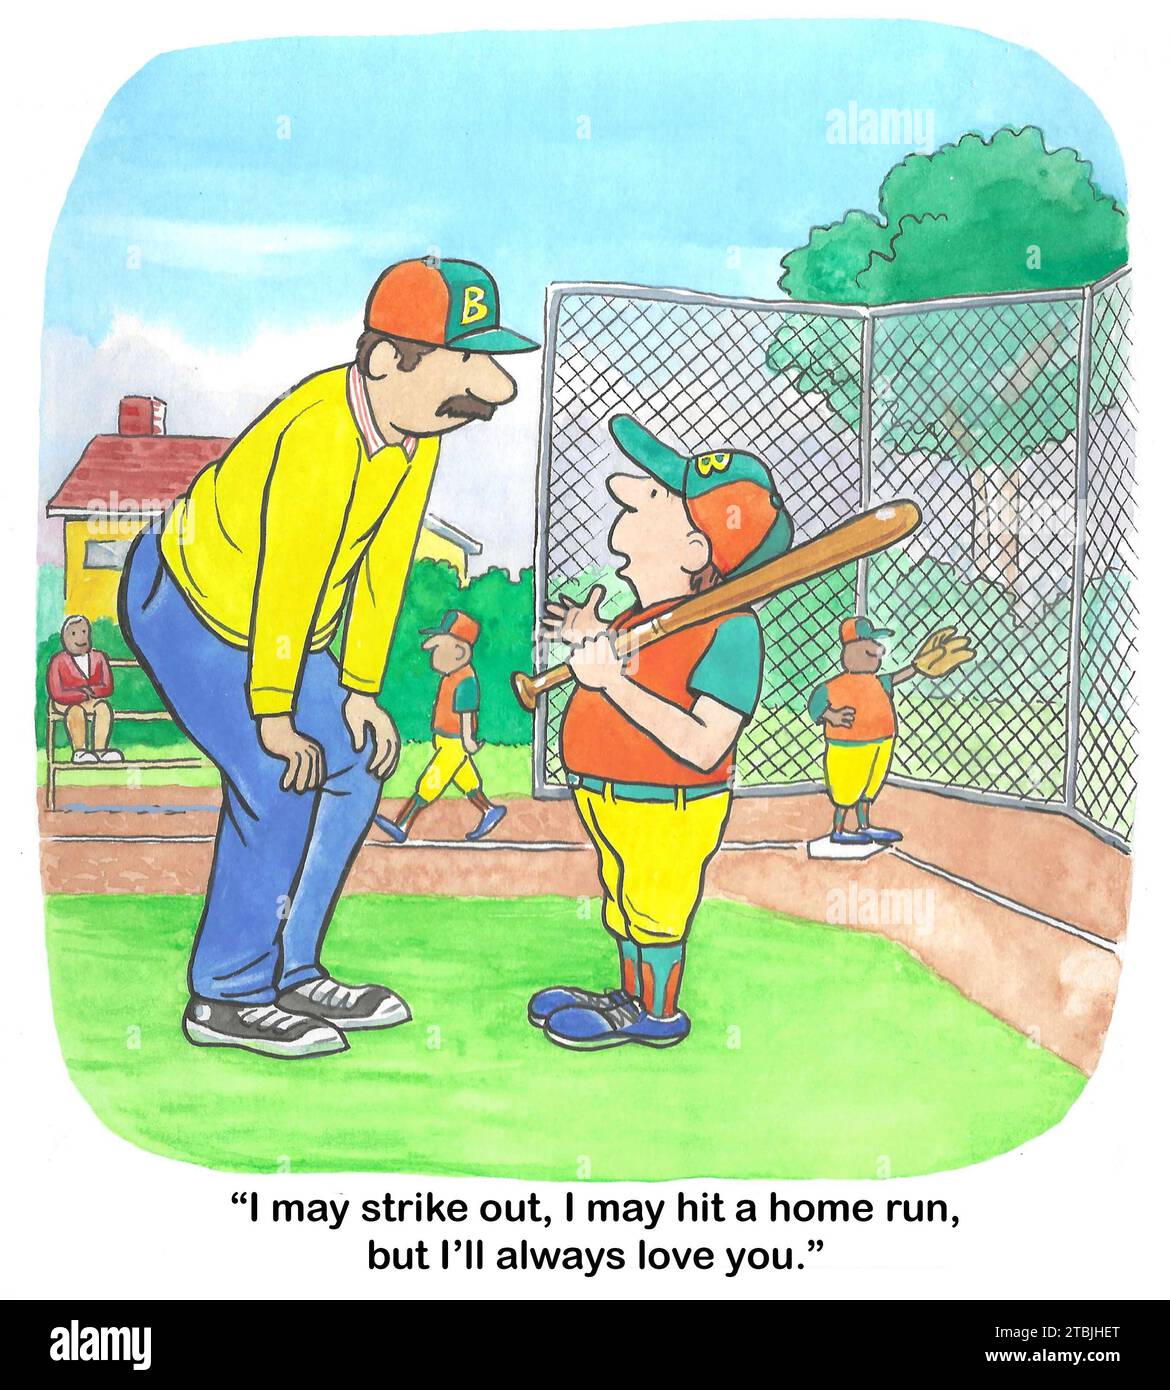 Caricatura de color de los papeles de la familia invertidos - el hijo le dice al padre "Siempre te amaré", incluso si no lo hago bien en softbol. Foto de stock